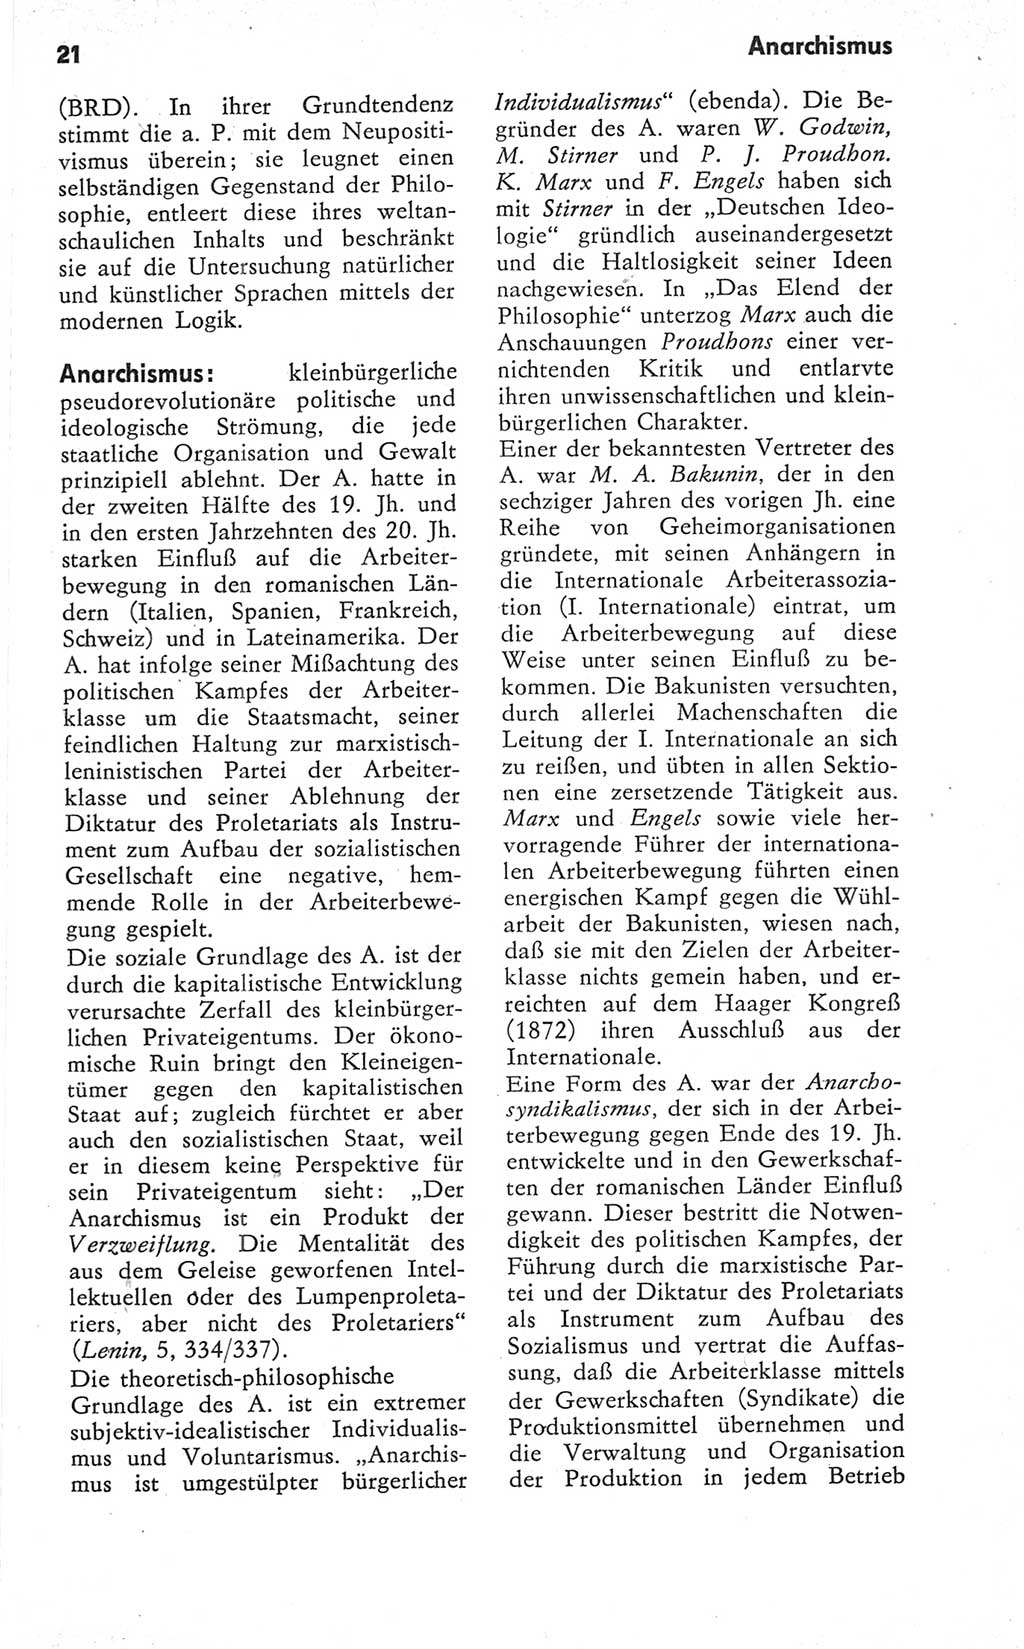 Kleines Wörterbuch der marxistisch-leninistischen Philosophie [Deutsche Demokratische Republik (DDR)] 1979, Seite 21 (Kl. Wb. ML Phil. DDR 1979, S. 21)